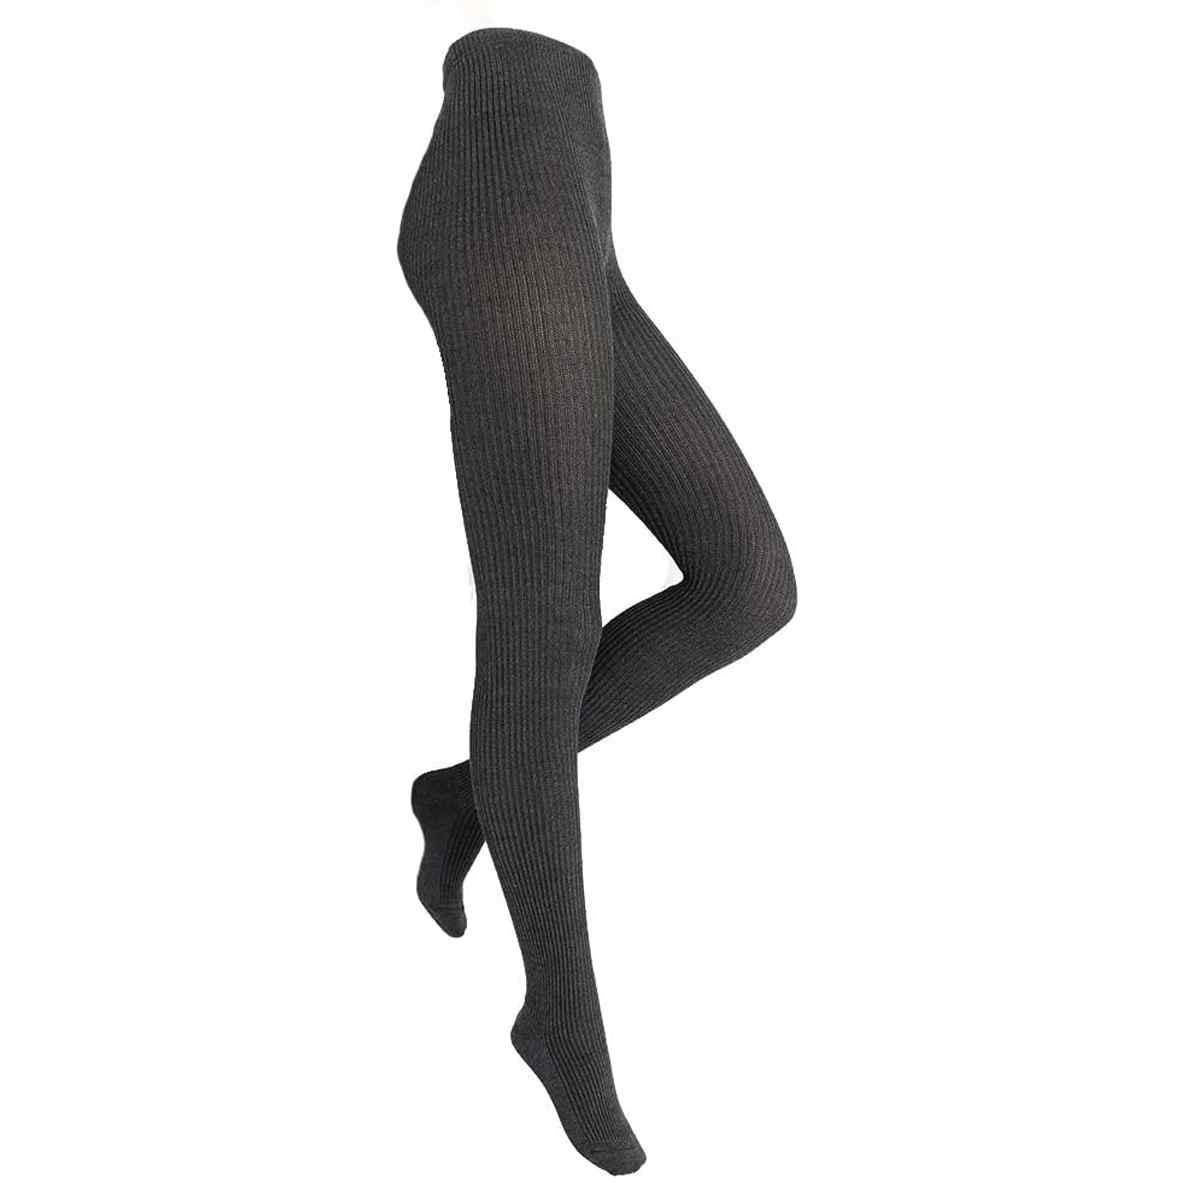 Shimasocks Kuschelig warme & sehr bequeme Damenstrumpfhose - Damen Strumpfhose in 2:1 Rippe, Größe:40/42, Farben 2021:anthrazit